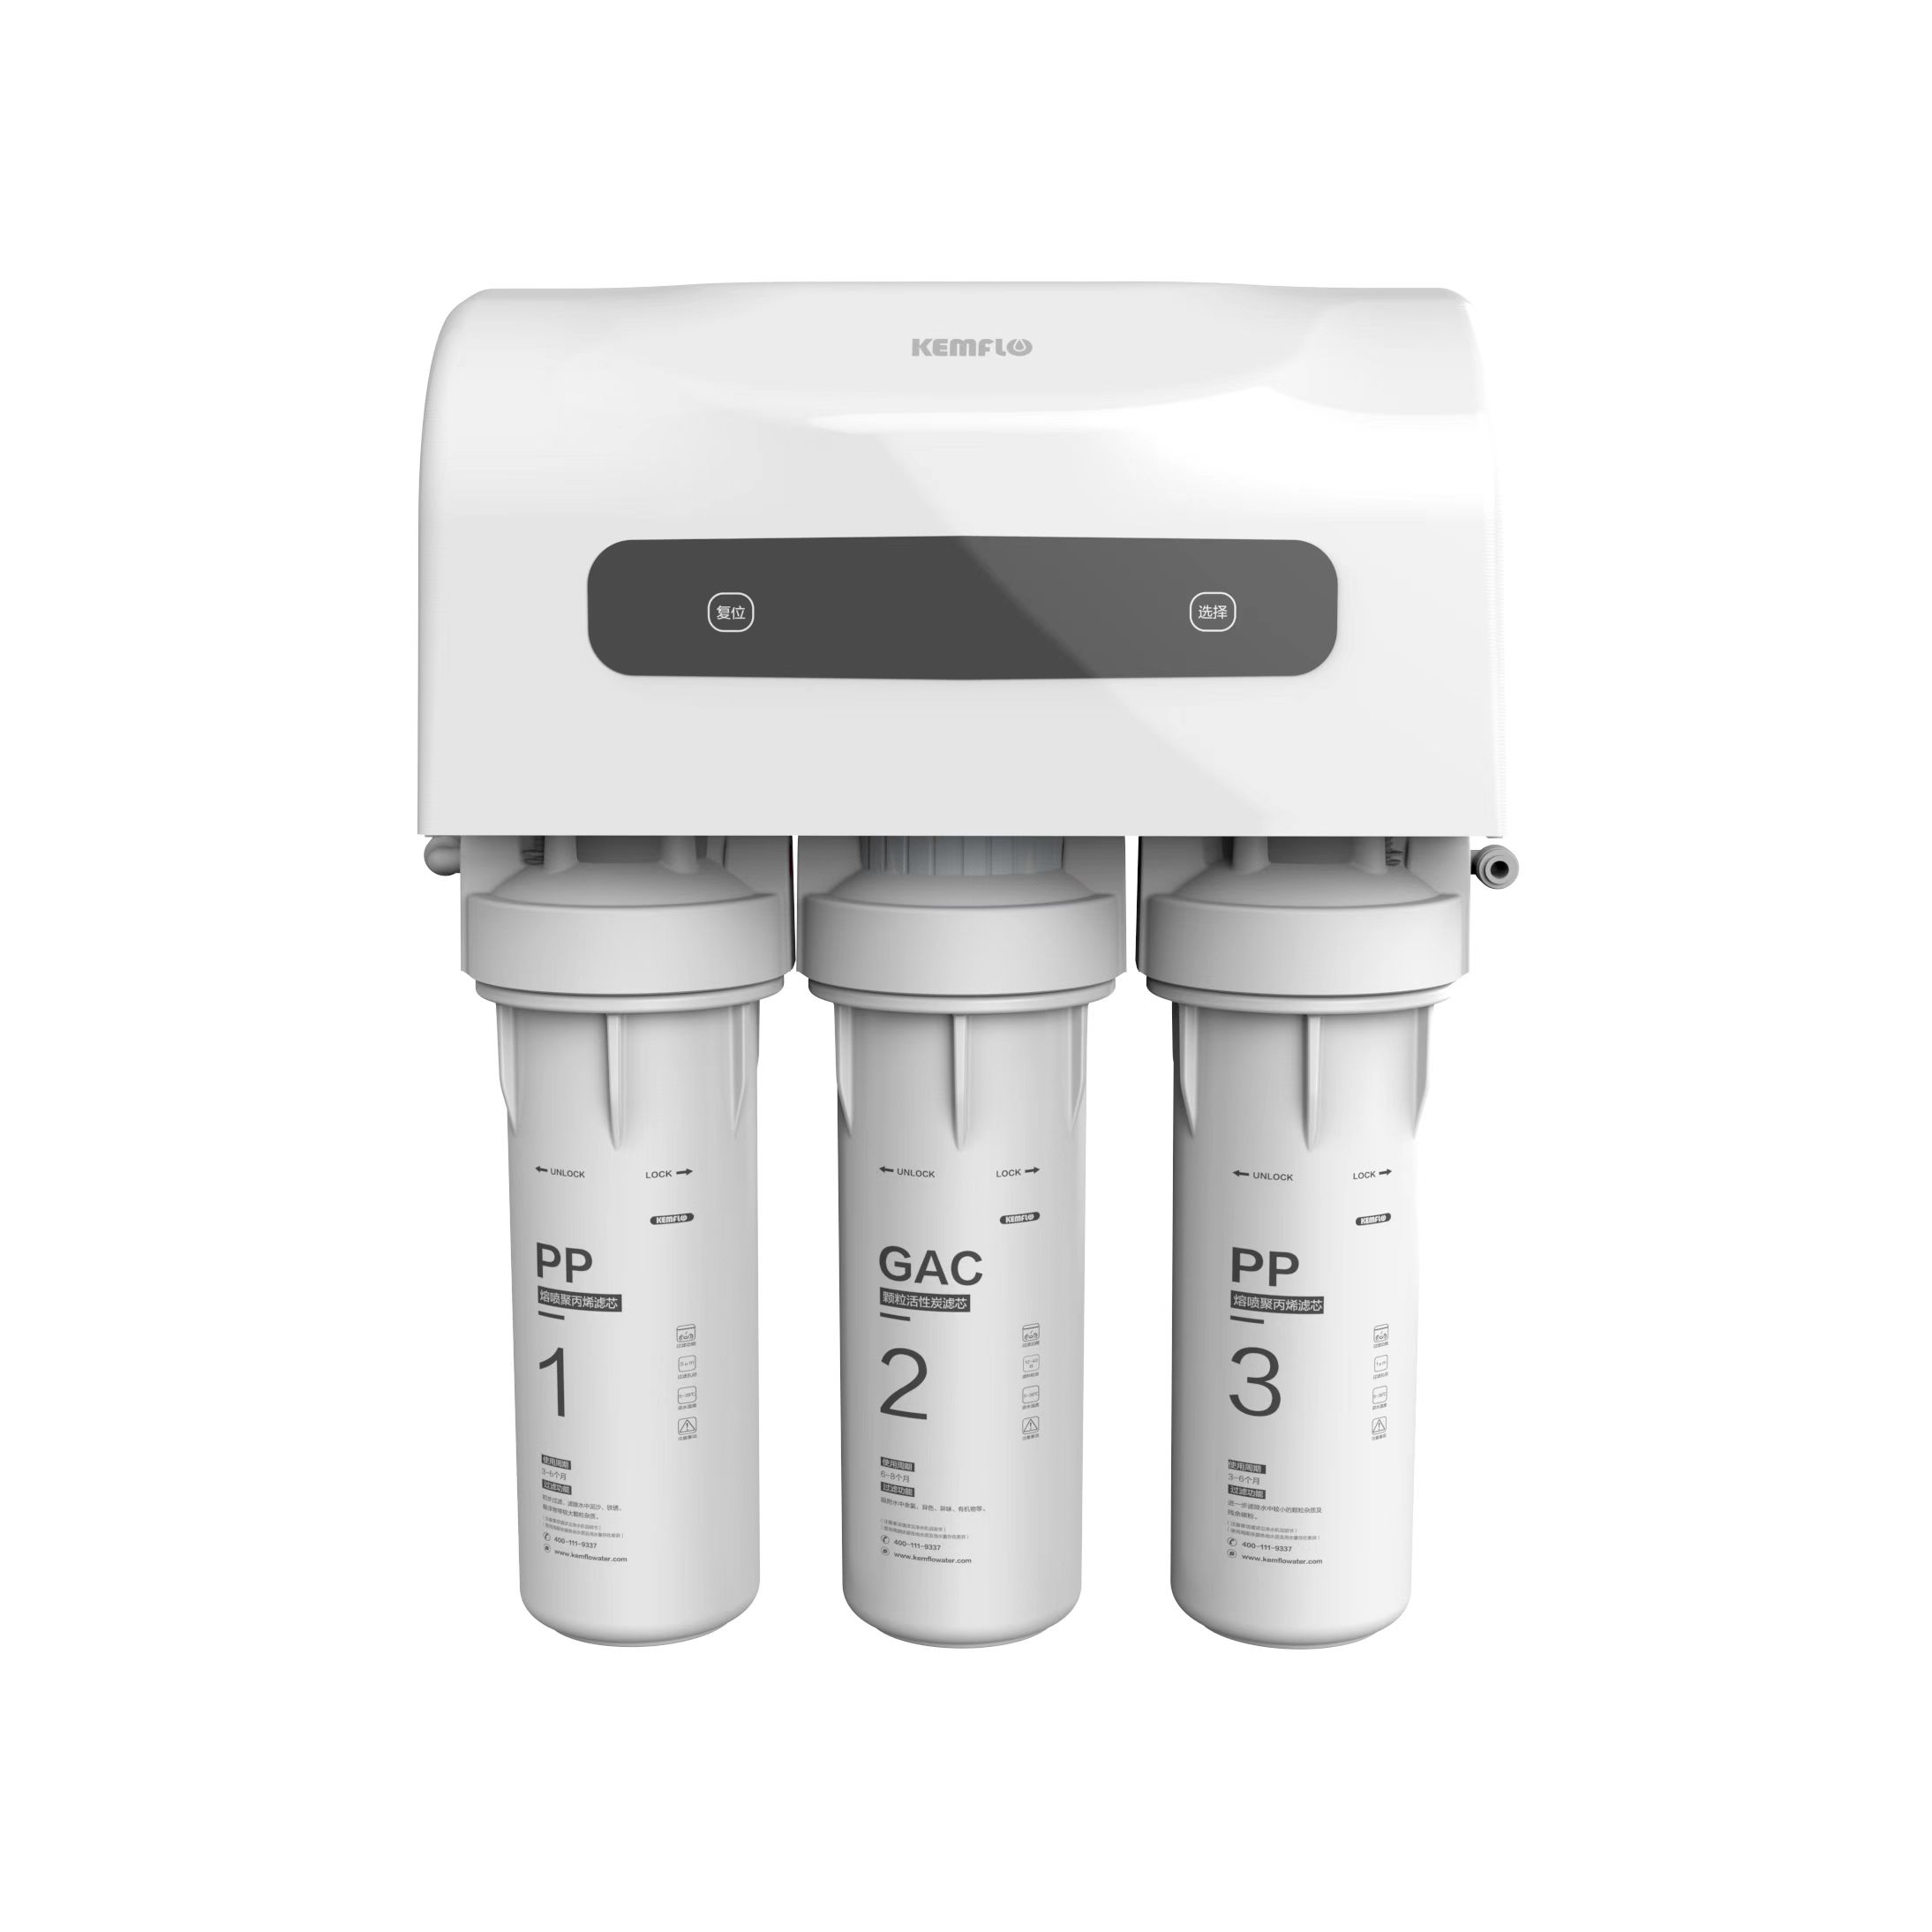 Residential water filtration KFRO0075U-B2